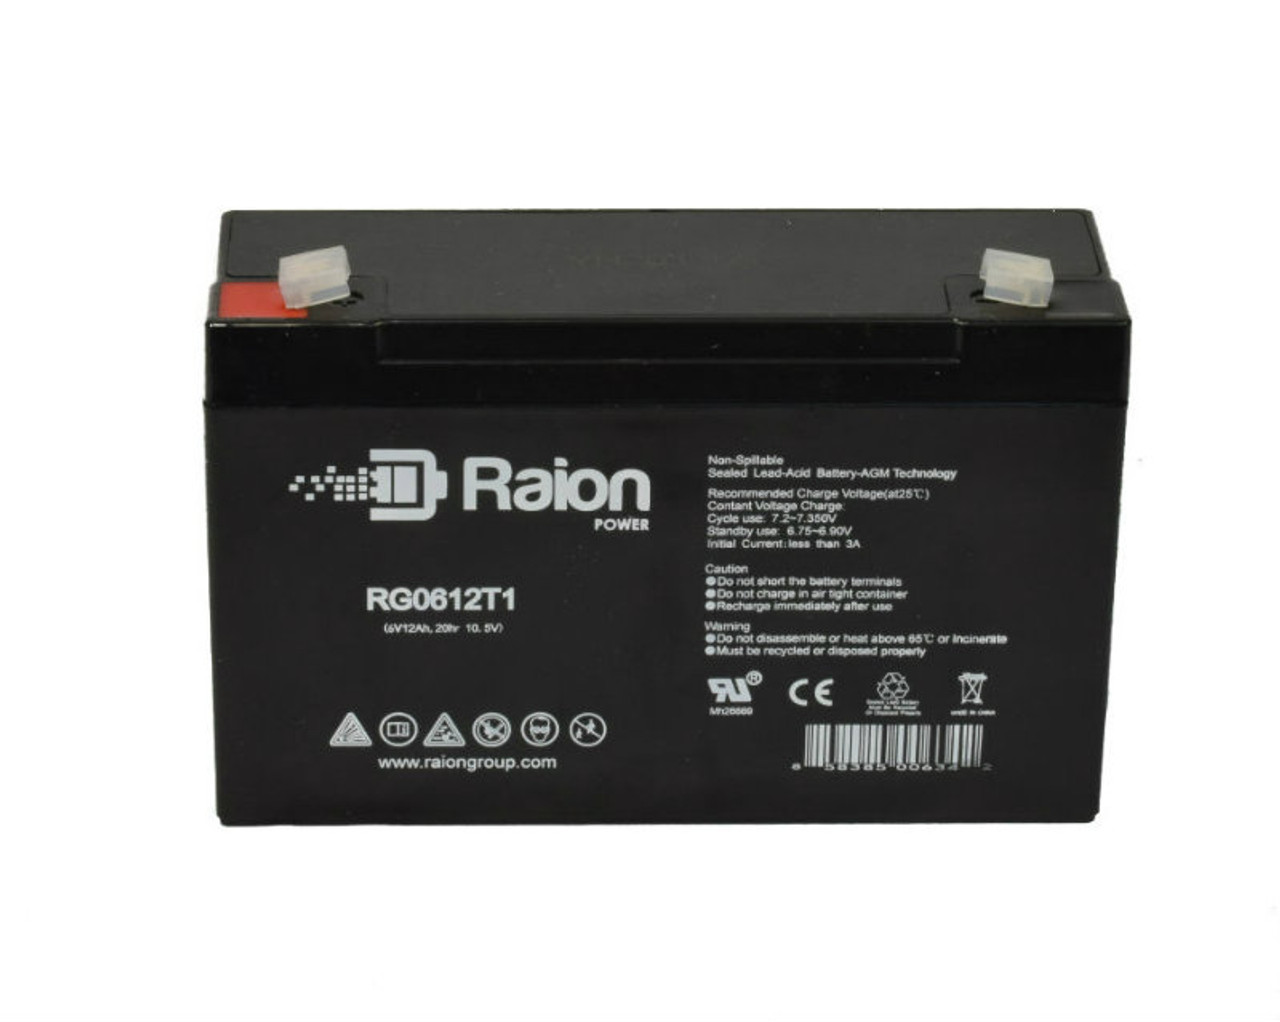 Raion Power RG06120T1 SLA Battery for Light Alarms 2RPG2